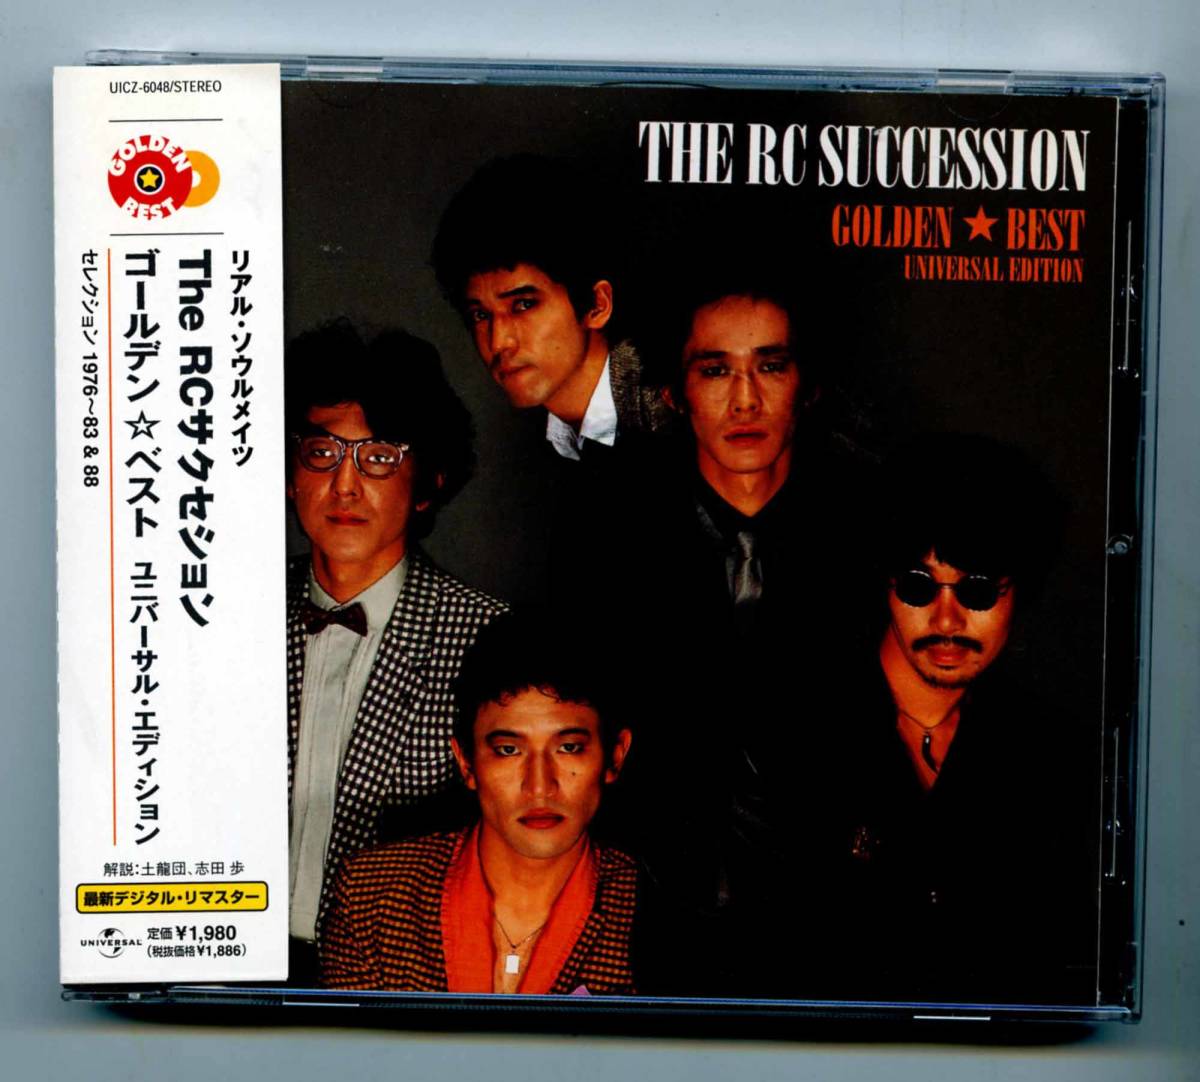 RCサクセション CD「Golden ☆ Best Universal Edition」帯、解説歌詞カードそろった完品 UICZ-6048_画像1